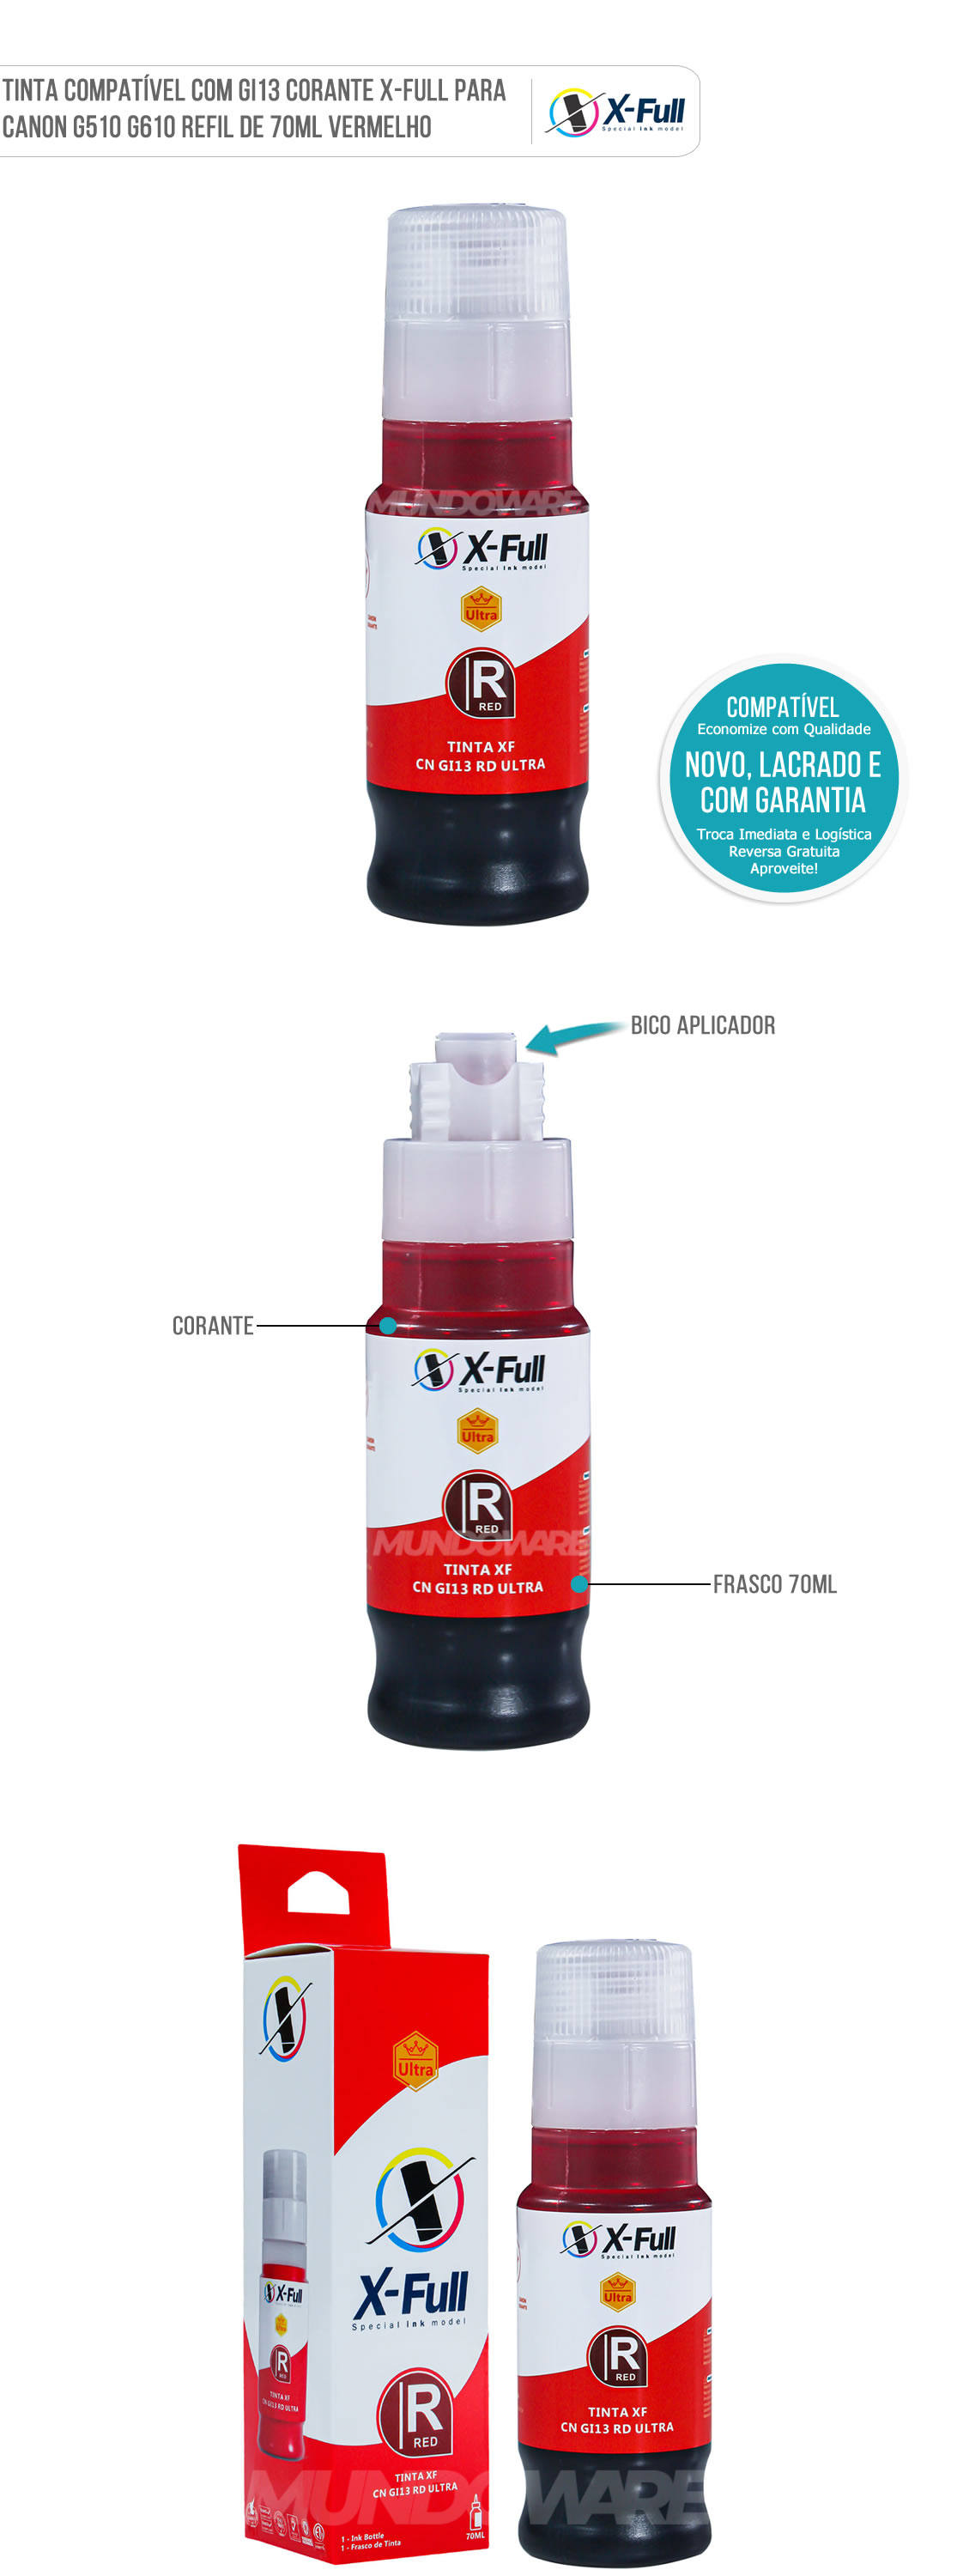 Tinta X-Full Compatível com GI13 GI-13 Vermelho Corante para Impressoras Canon G510 G610 G-510 G-610 Garrafa de 70ml